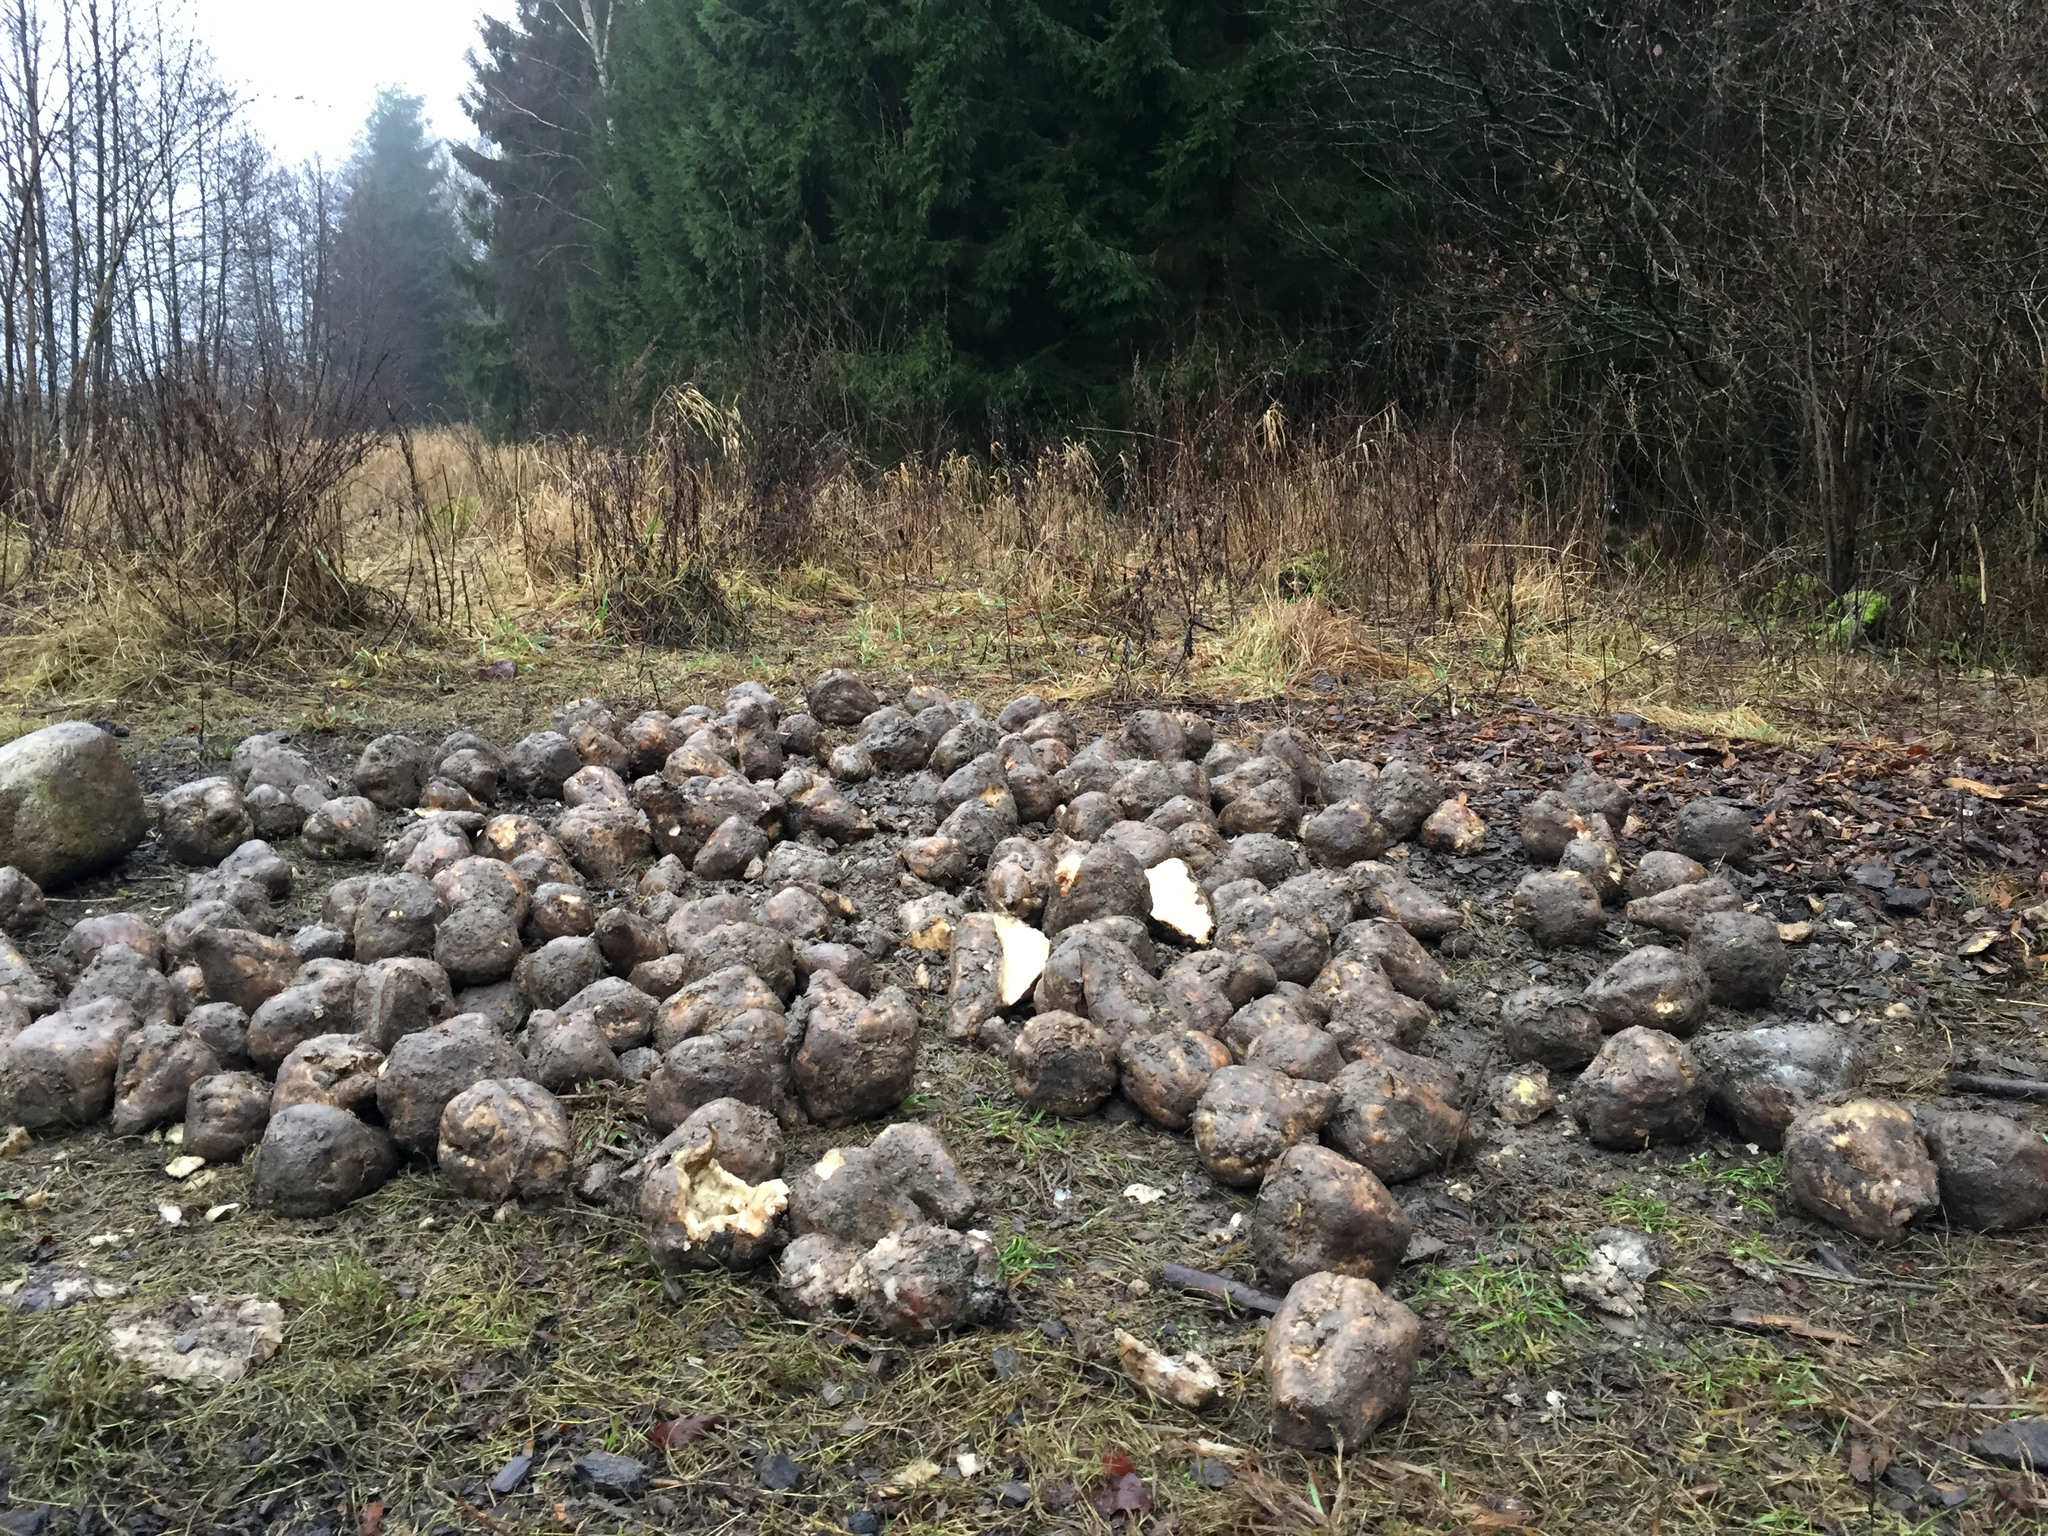 Den i Sverige nyupptäckta skadegöraren rotgallnematoder innebär stora bekymmer vid odling av potatis och morötter. Jordbruksverket varnar för att den kan spridas till nya områden med sockerbetor som läggs ut som viltfoder.